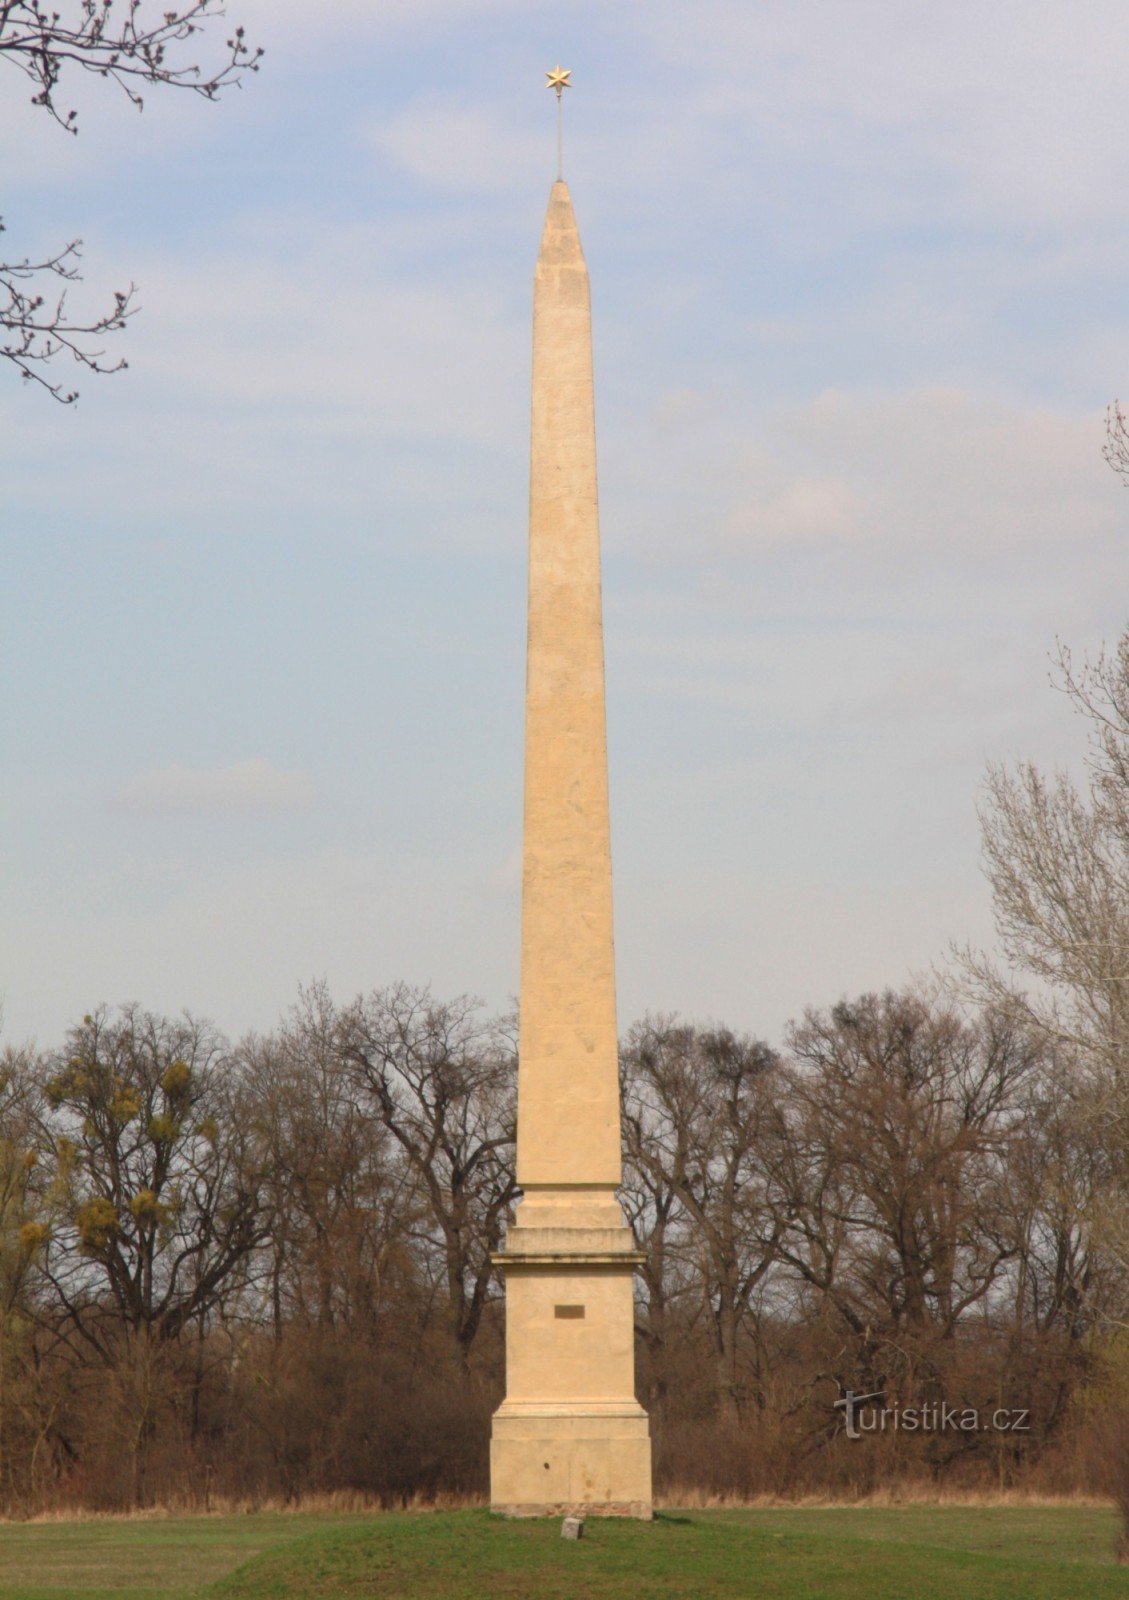 Obelisk in the park of the same name